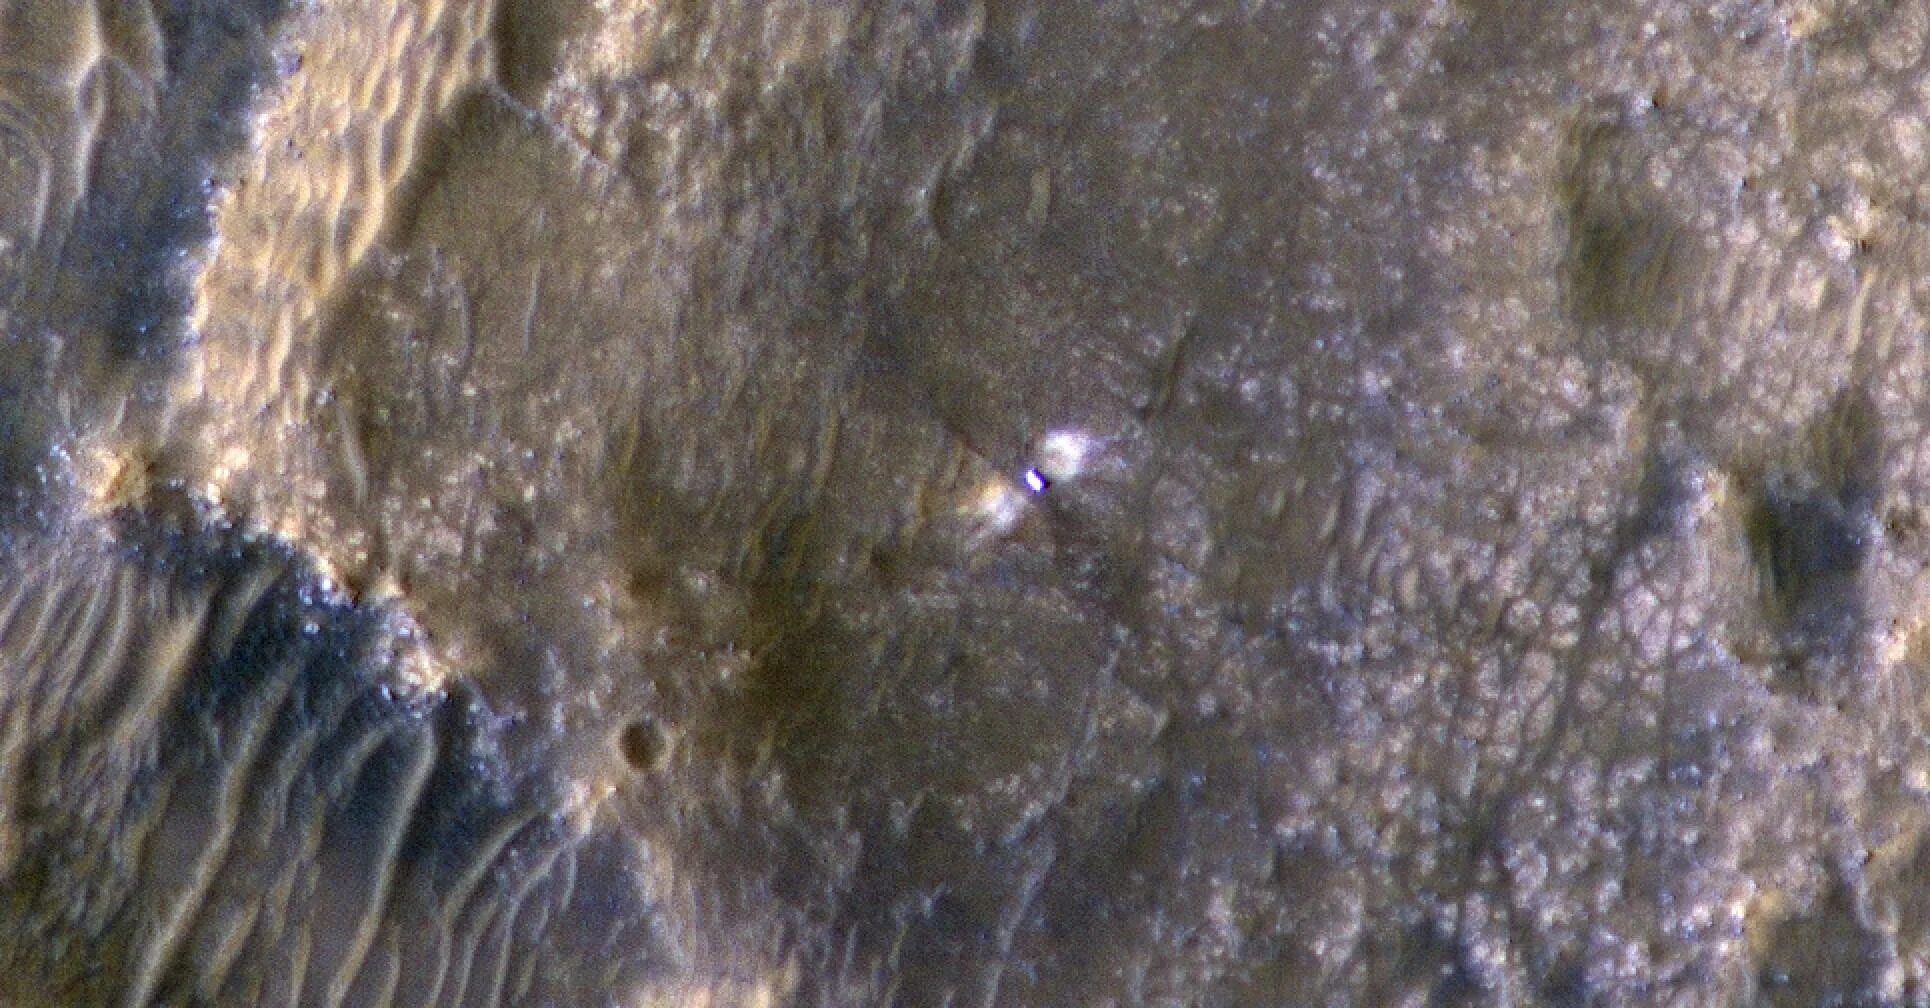 Марс Орбитер снимок Марса. Камера HIRISE Марс. Снимки Марса НАСА 2020. Фото НАСА 24.08.2005.